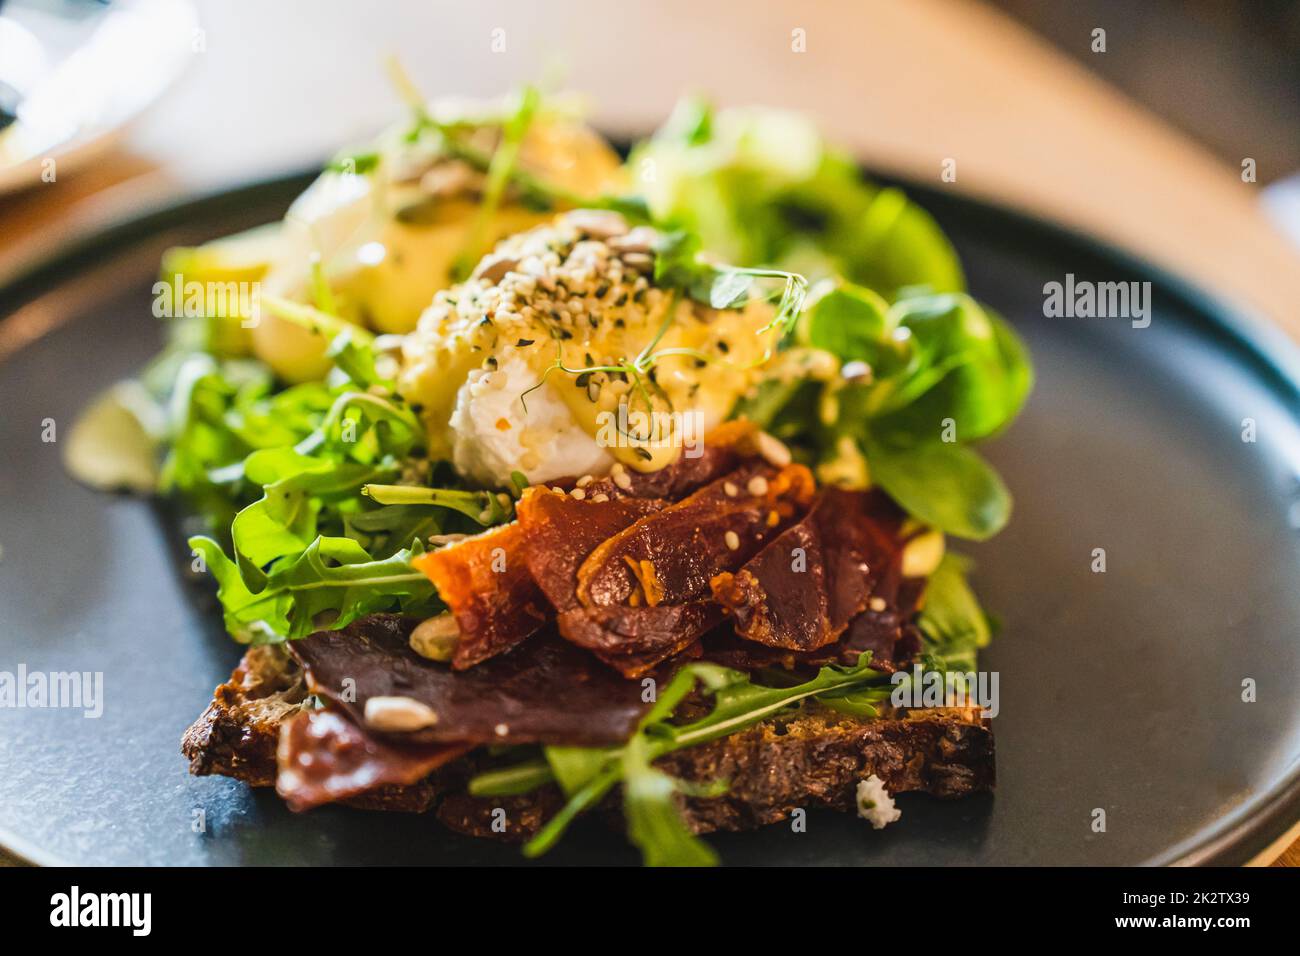 Eier benedict mit getrocknetem Schinken und Salatmischung auf einem schwarzen Teller. Nahaufnahme, selektiver Fokus. Stockfoto